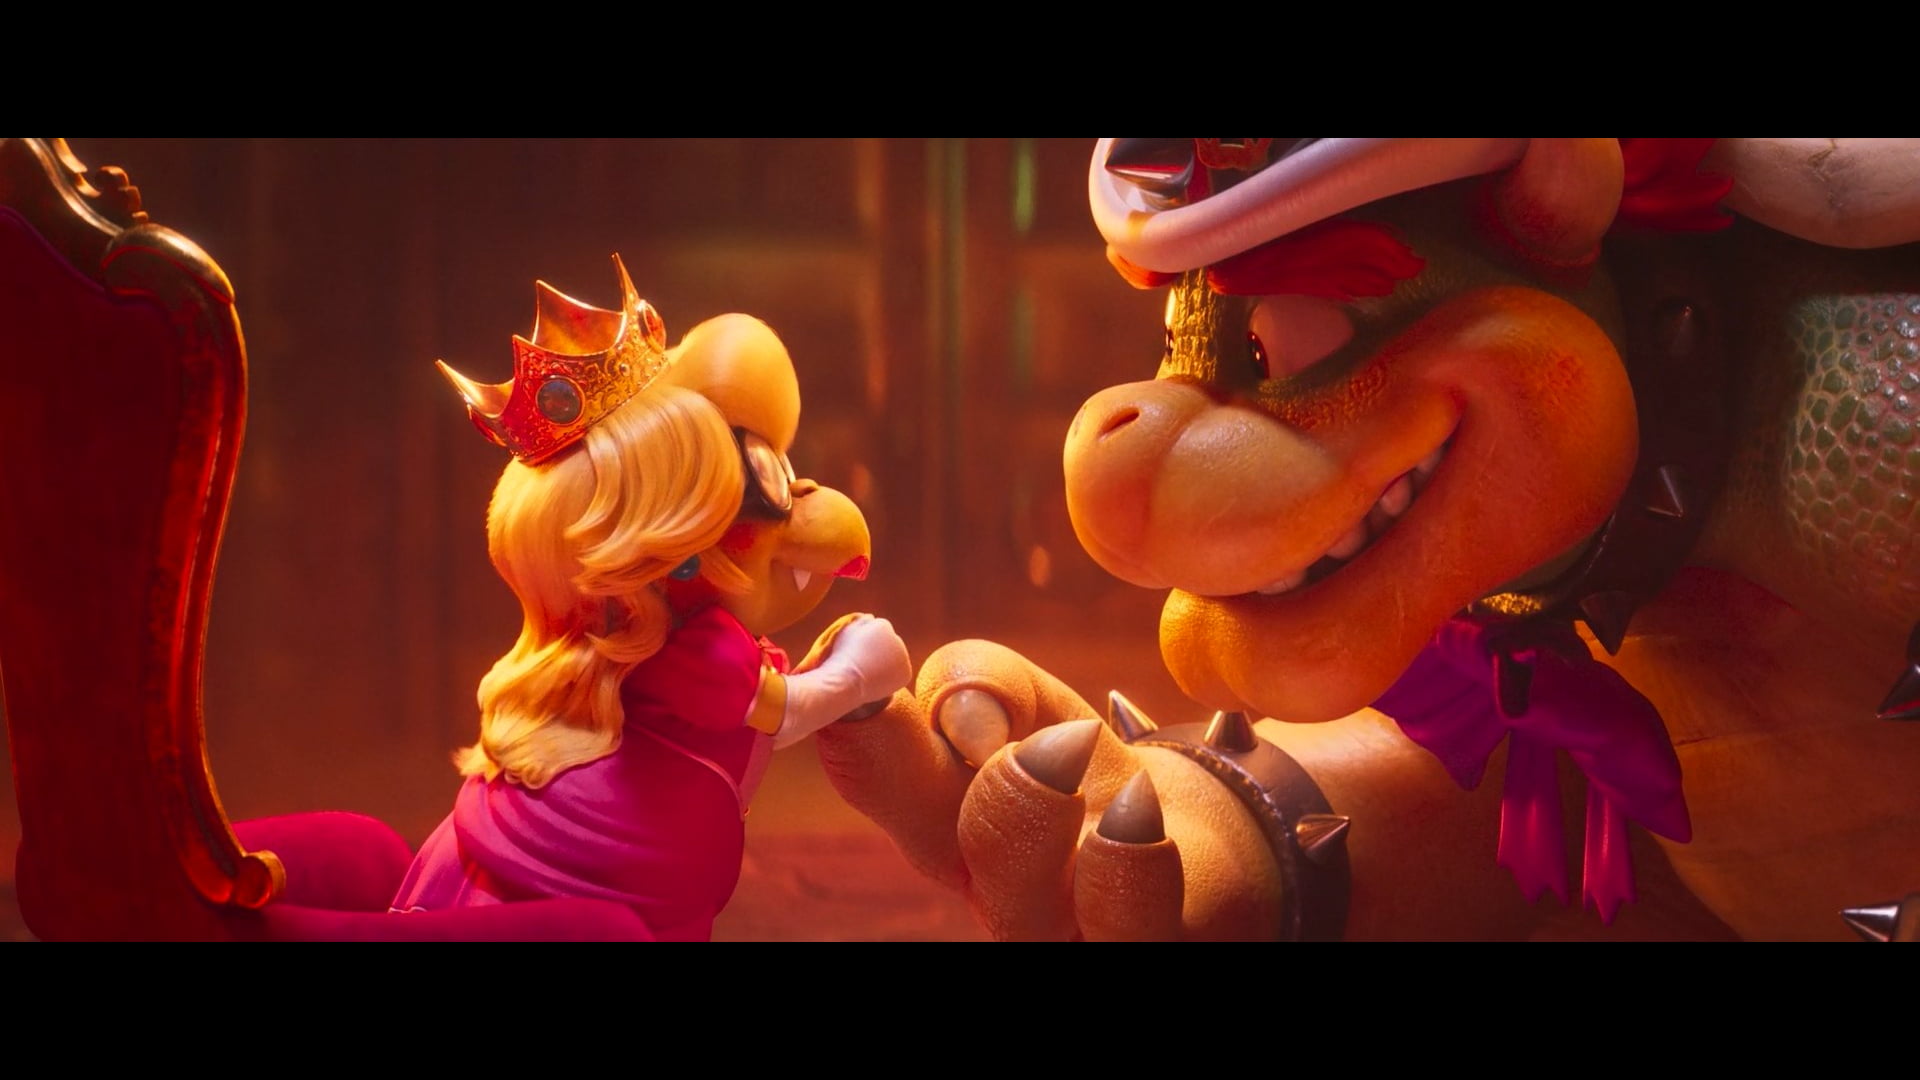 Super Mario Bros., Bowser, Princess Peach, alternate costume